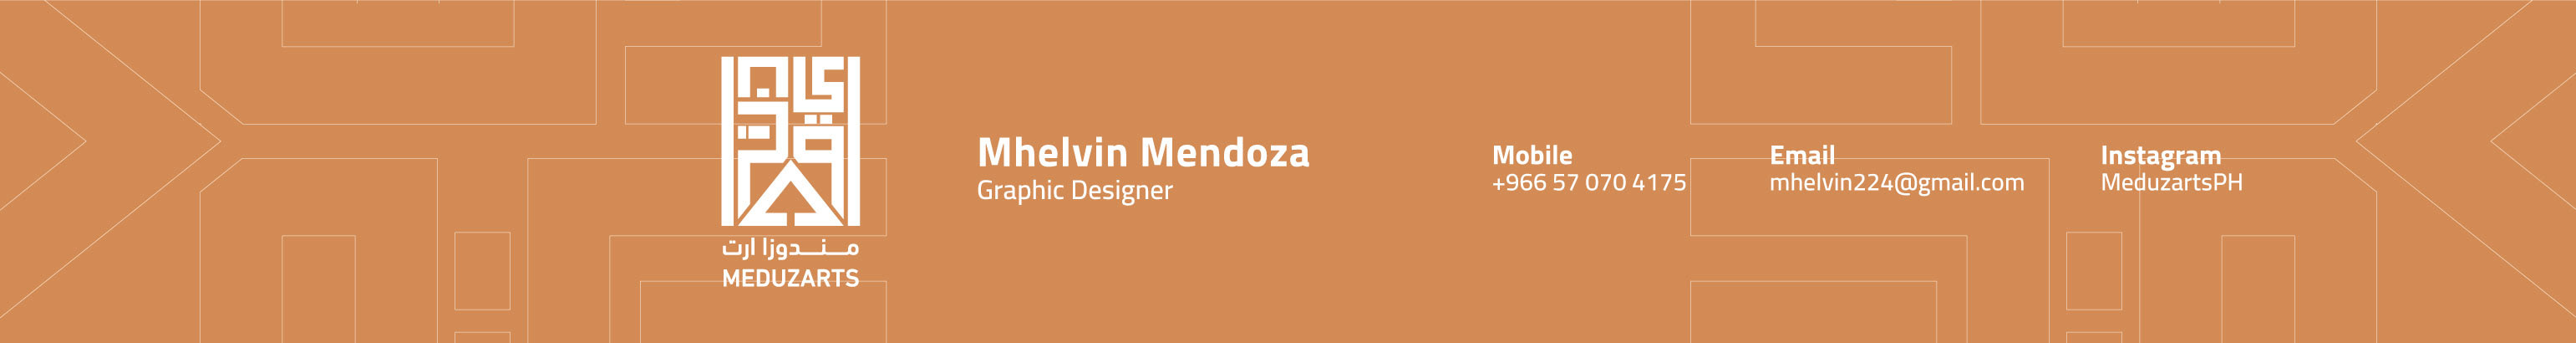 Mhelvin Mendoza's profile banner